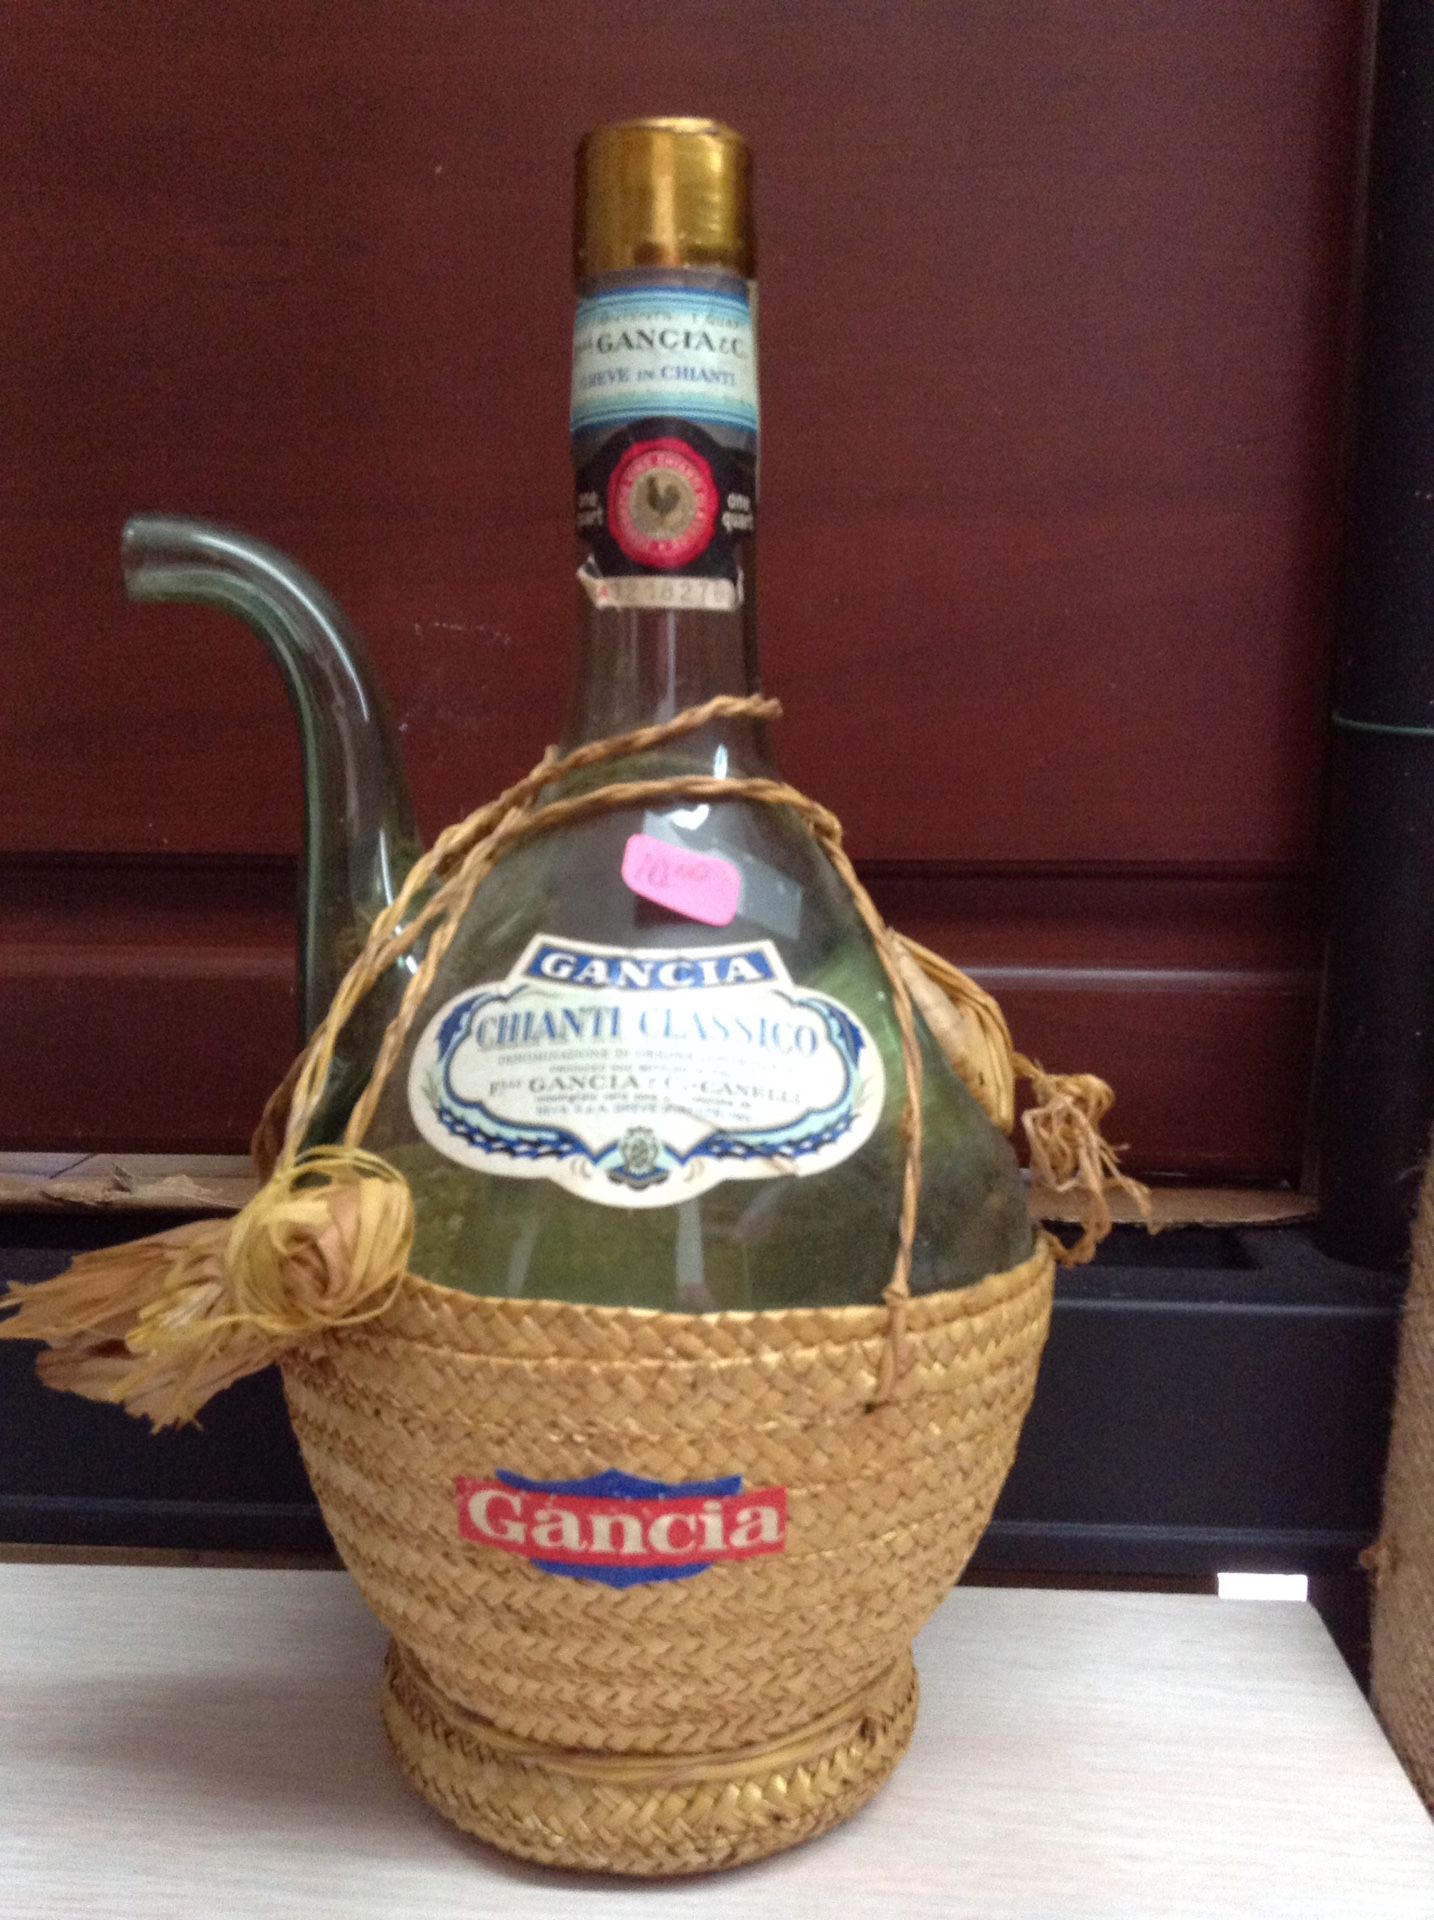 Gancia Chianti Wine Bottle vintage Italian